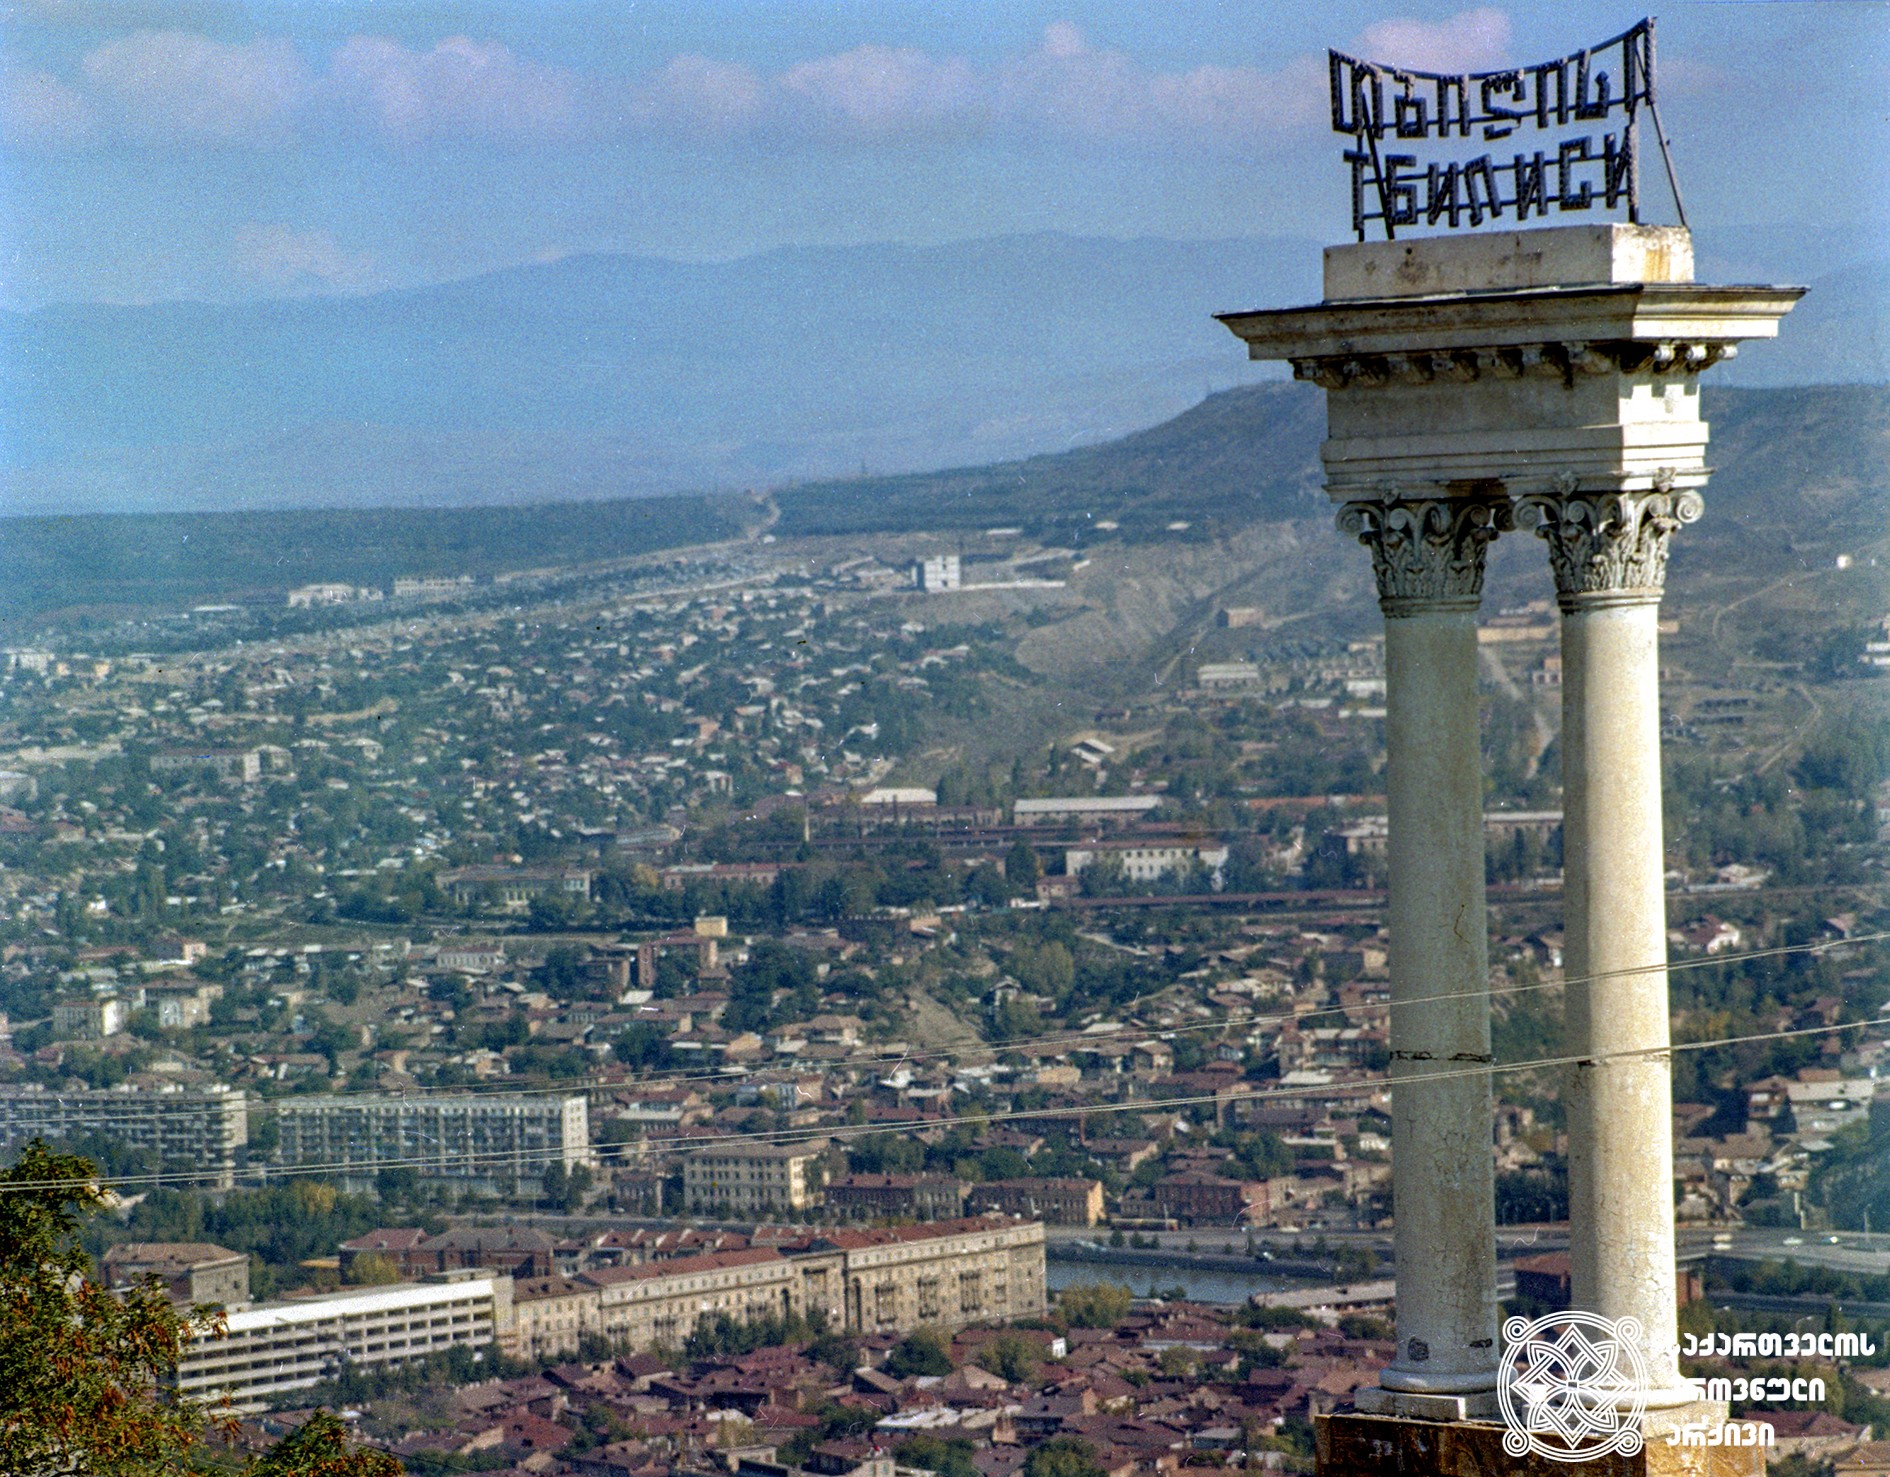 თბილისის ხედი. 1970 წელი.
<br>
View of Tbilisi. 1970